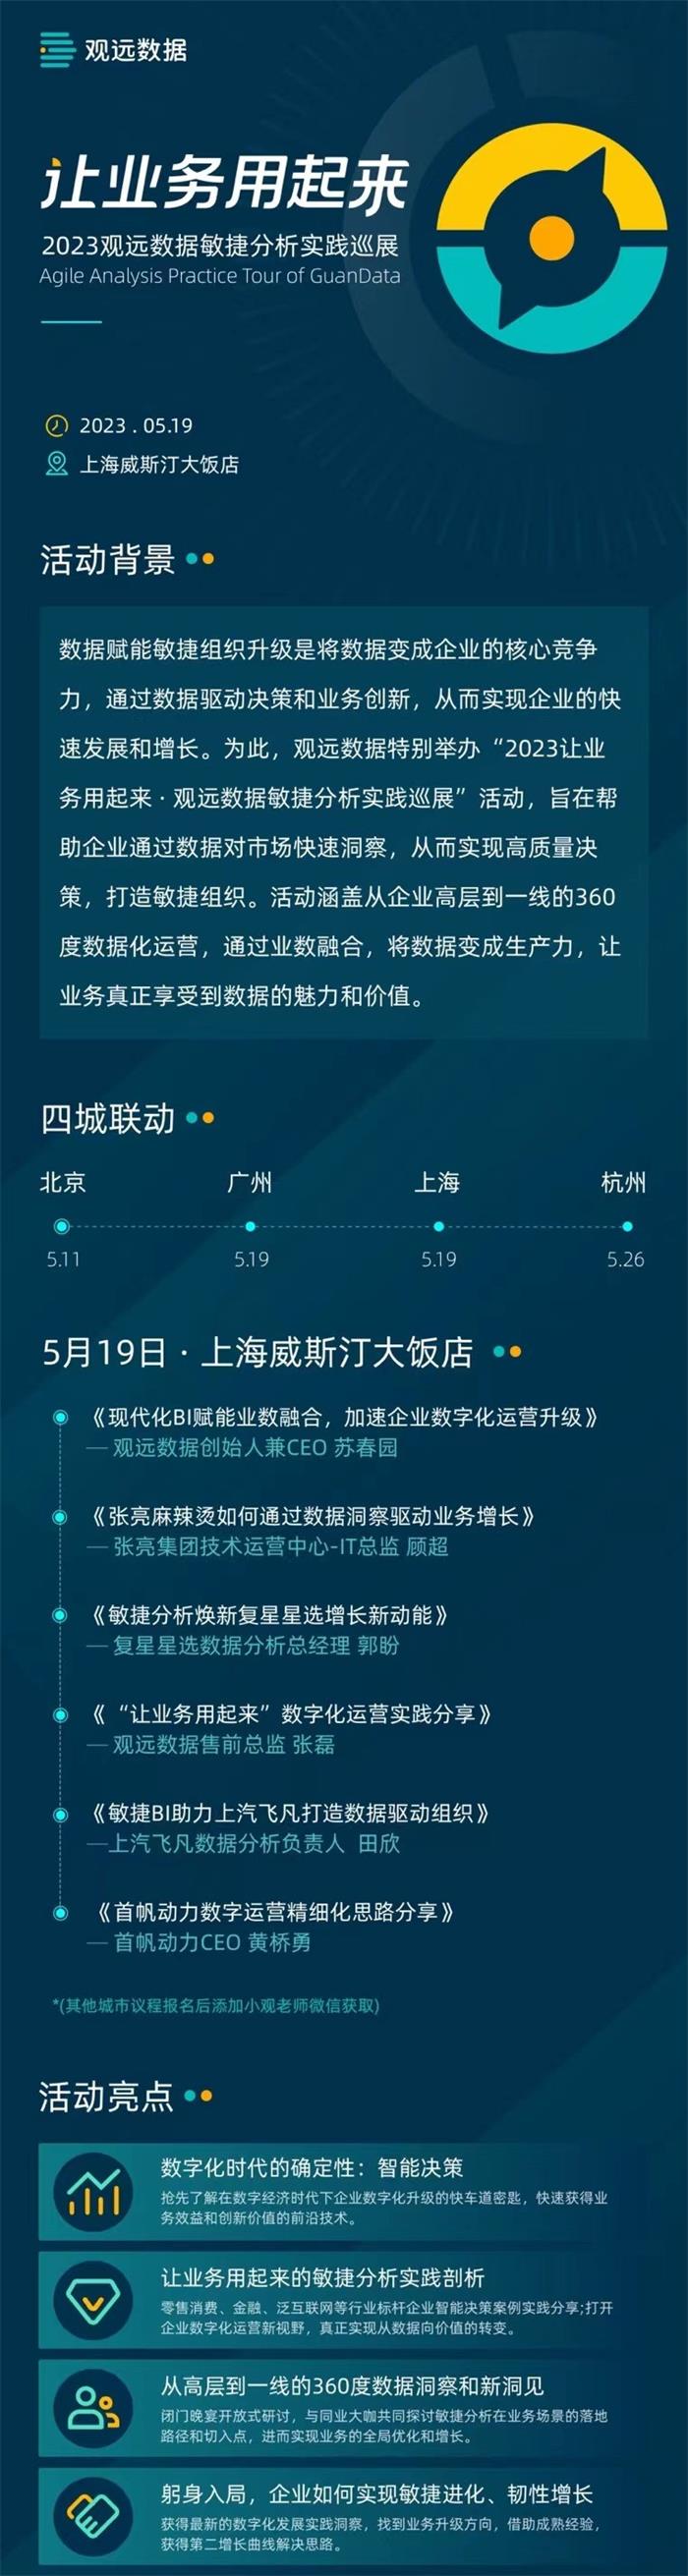 2023观远数据敏捷分析实践巡展·上海站.jpg